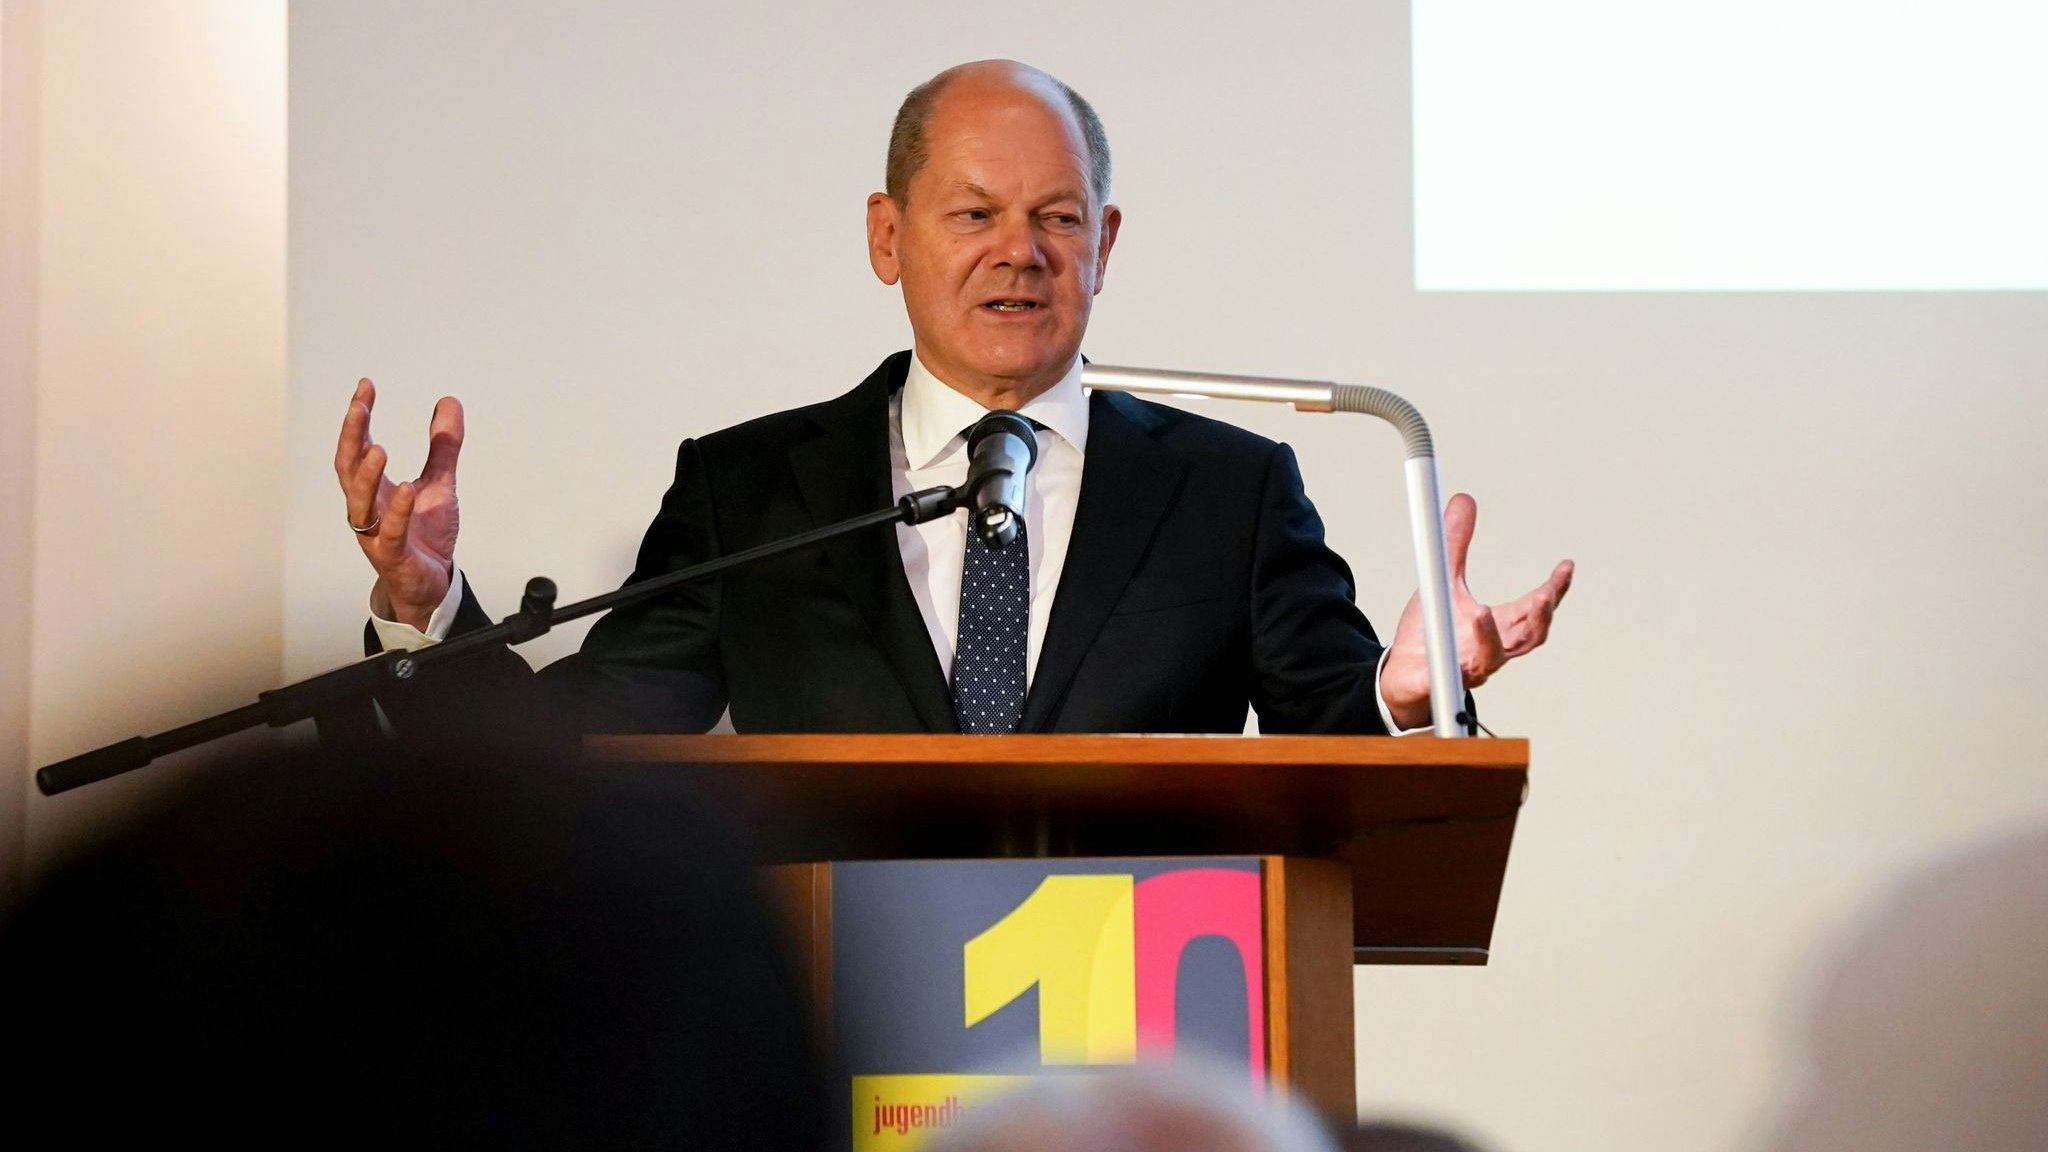 Bundeskanzler Olaf Scholz sichert eine zügige Umsetzung der geplanten Entlastungen wegen der hohen Energiepreise zu. Foto: dpa/Brandt